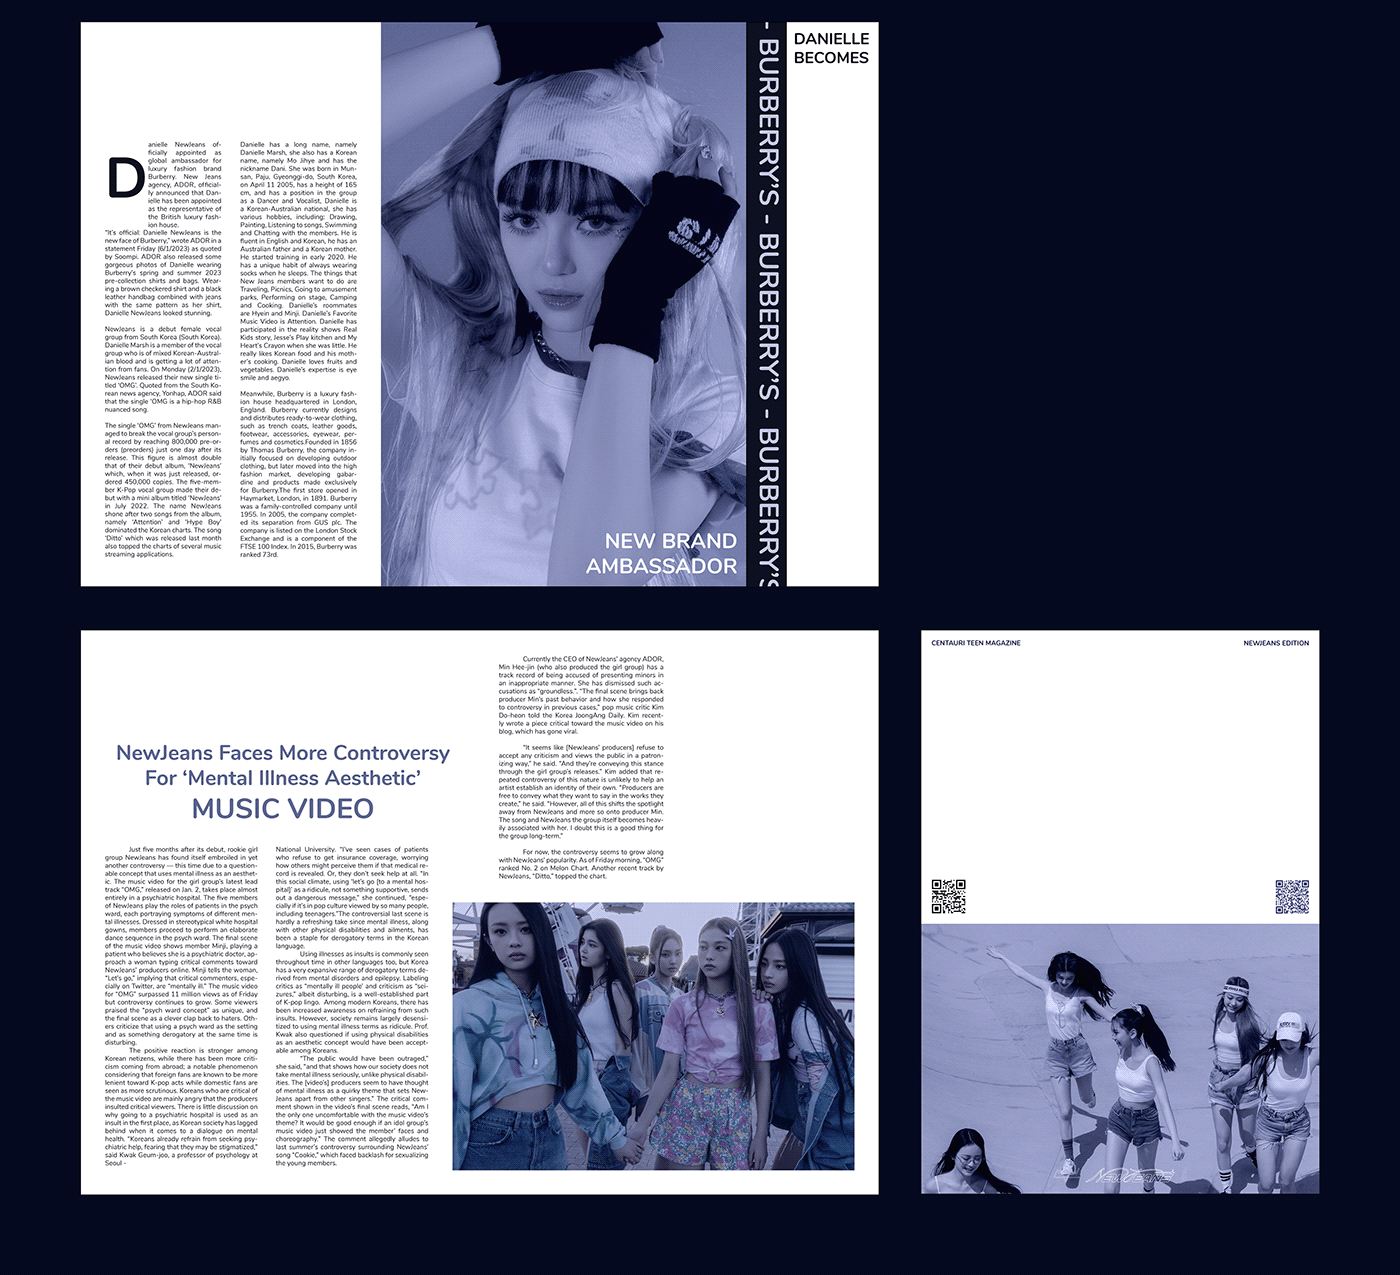 Digital Art  kpop kpop fanart Layout Layout Design magazine Magazine Cover Magazine design magazine layout Newjeans